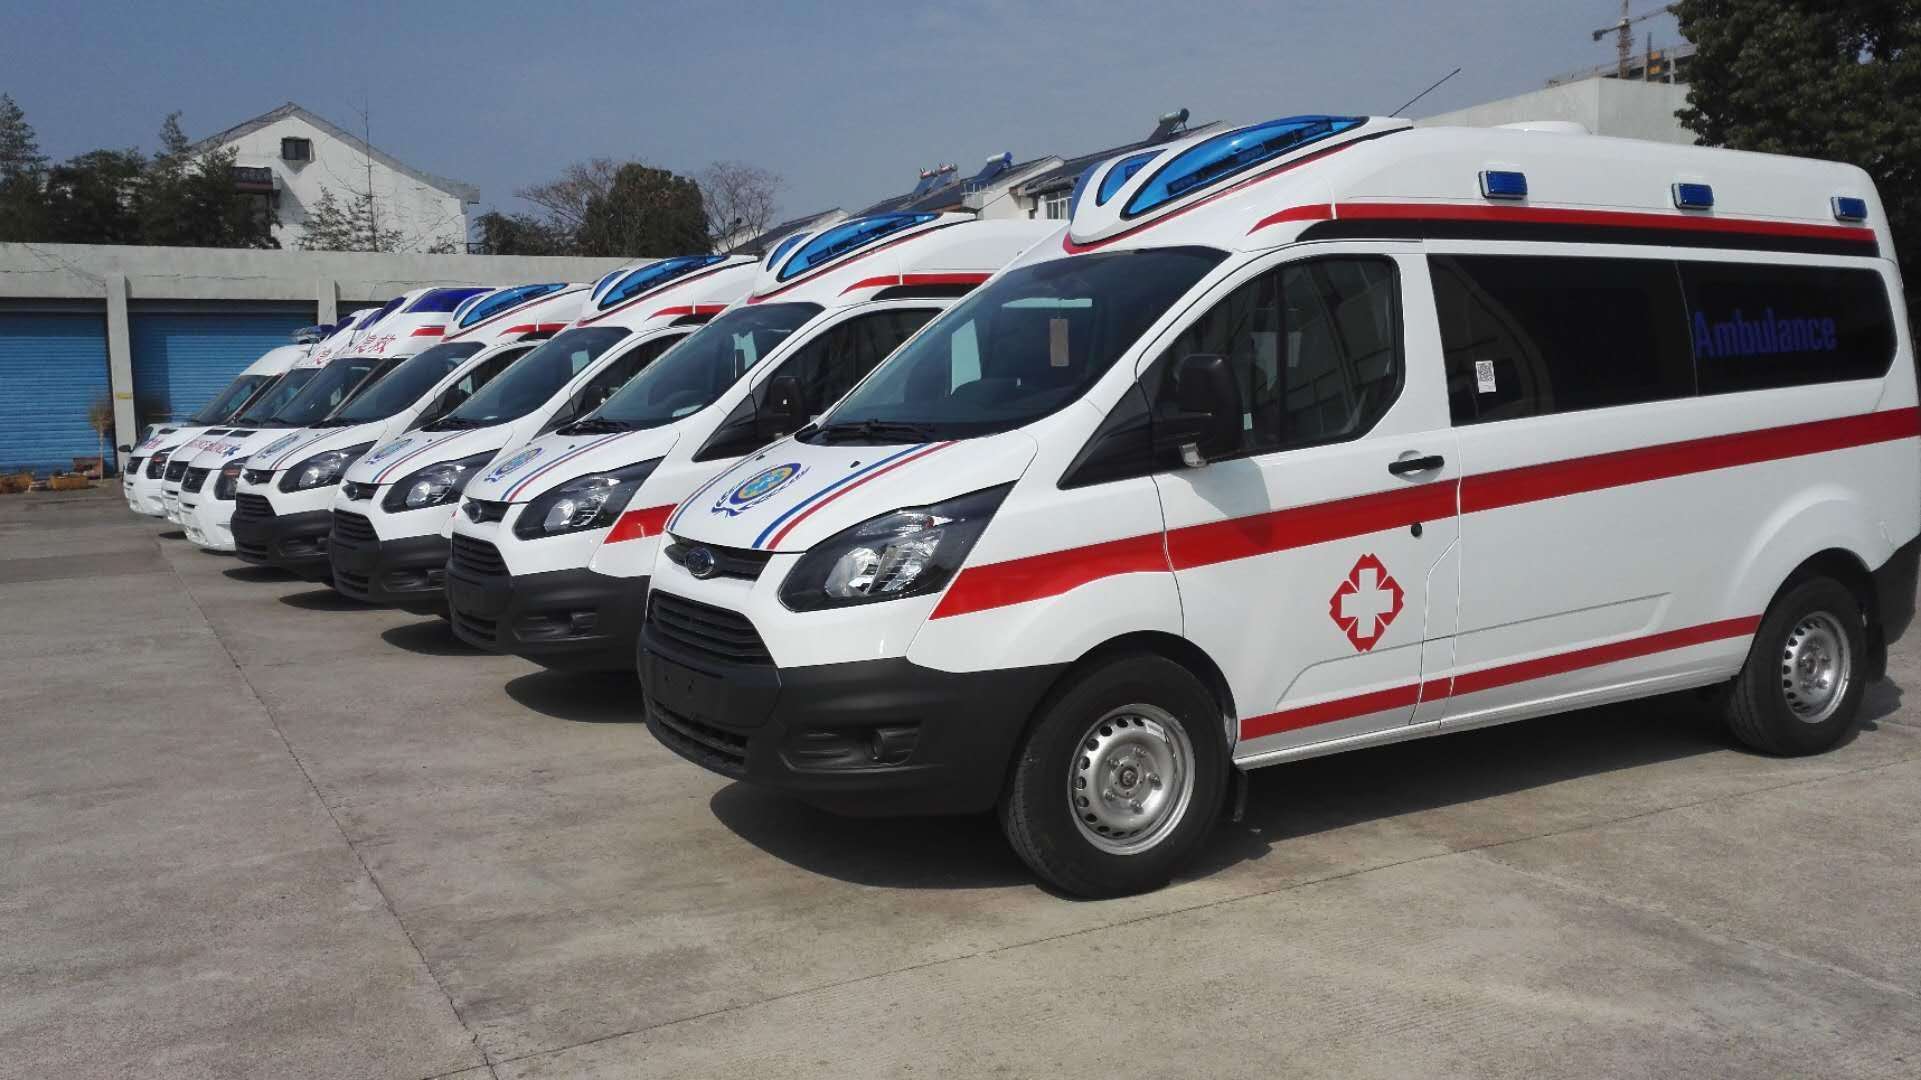 吉林长途救护车出租收费价格低私人120救护车出租 